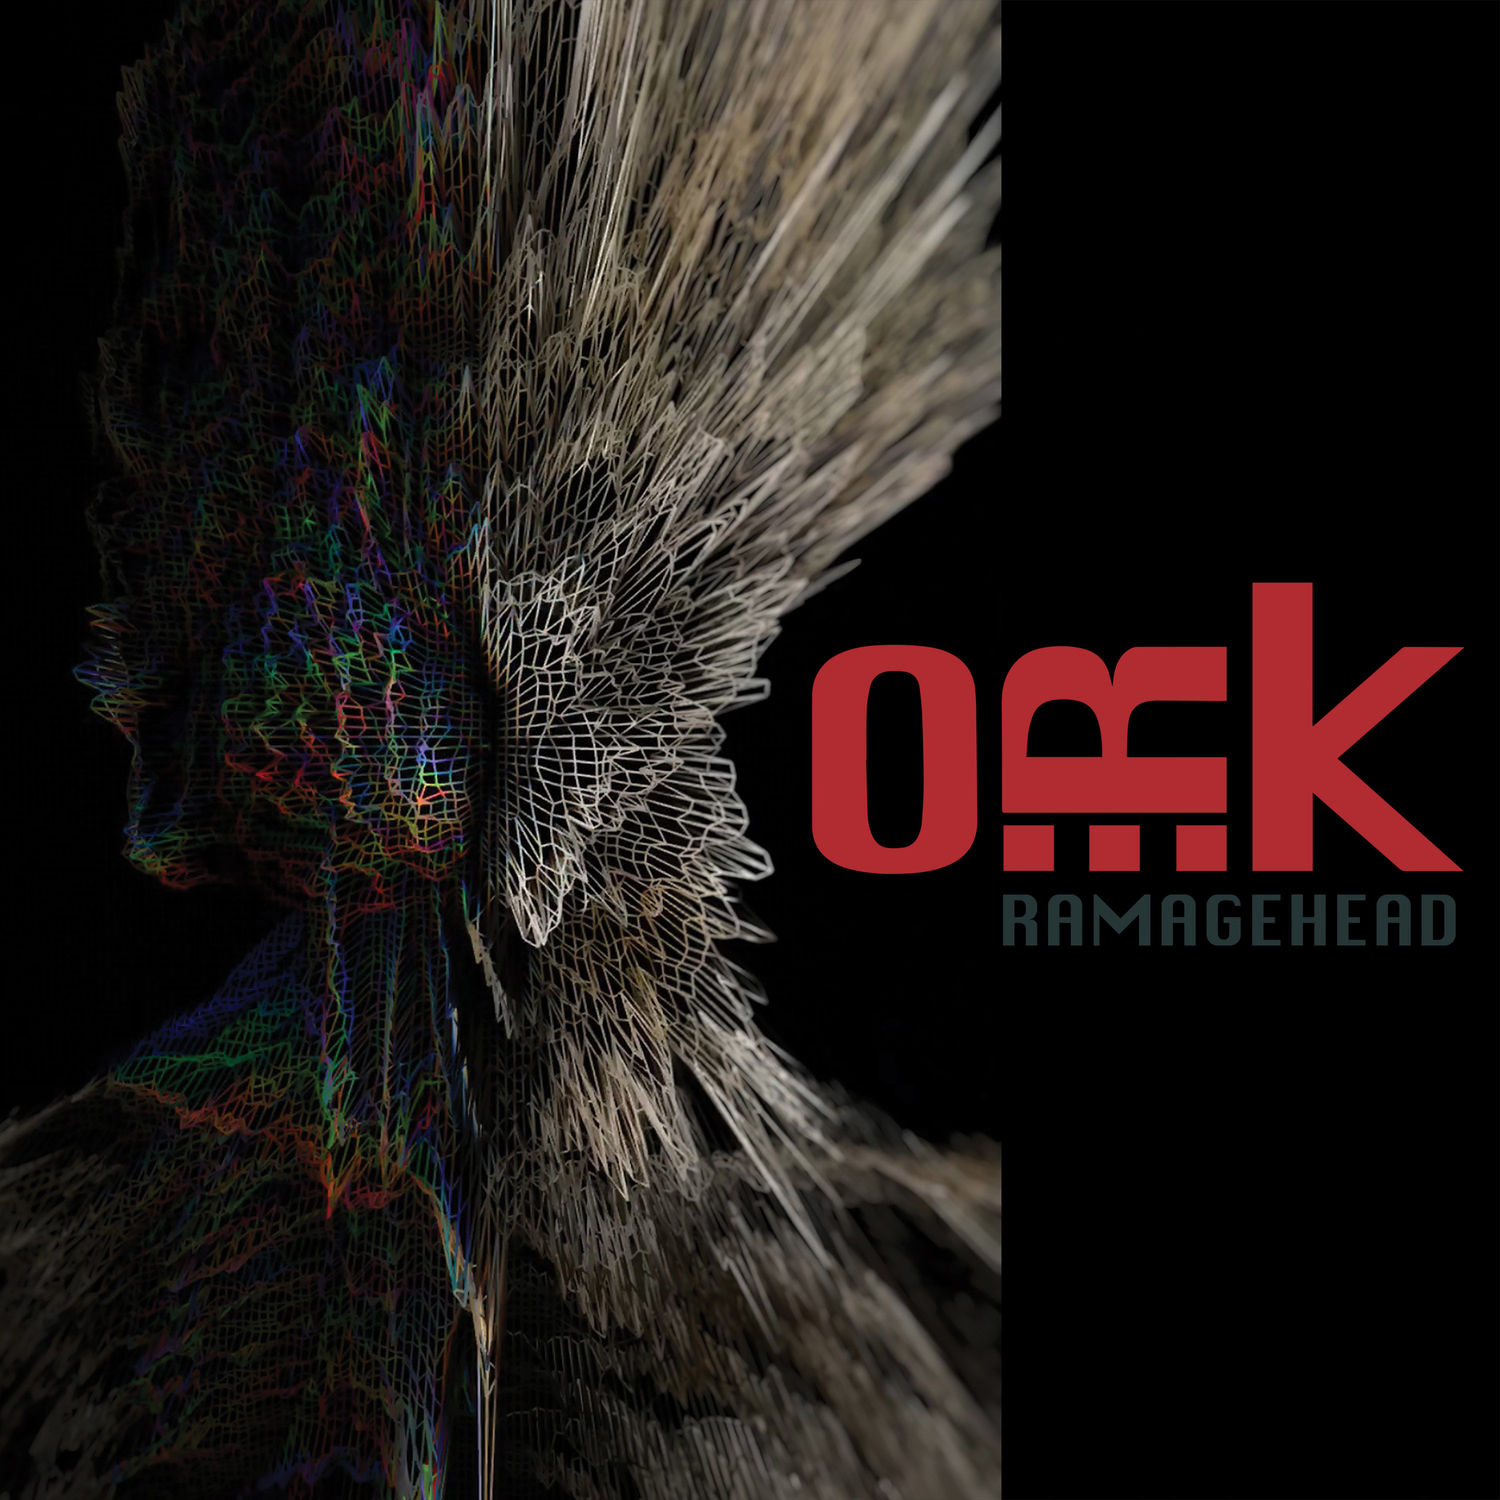 O.R.k. - Ramagehead (2019) [FLAC 24bit/48kHz]